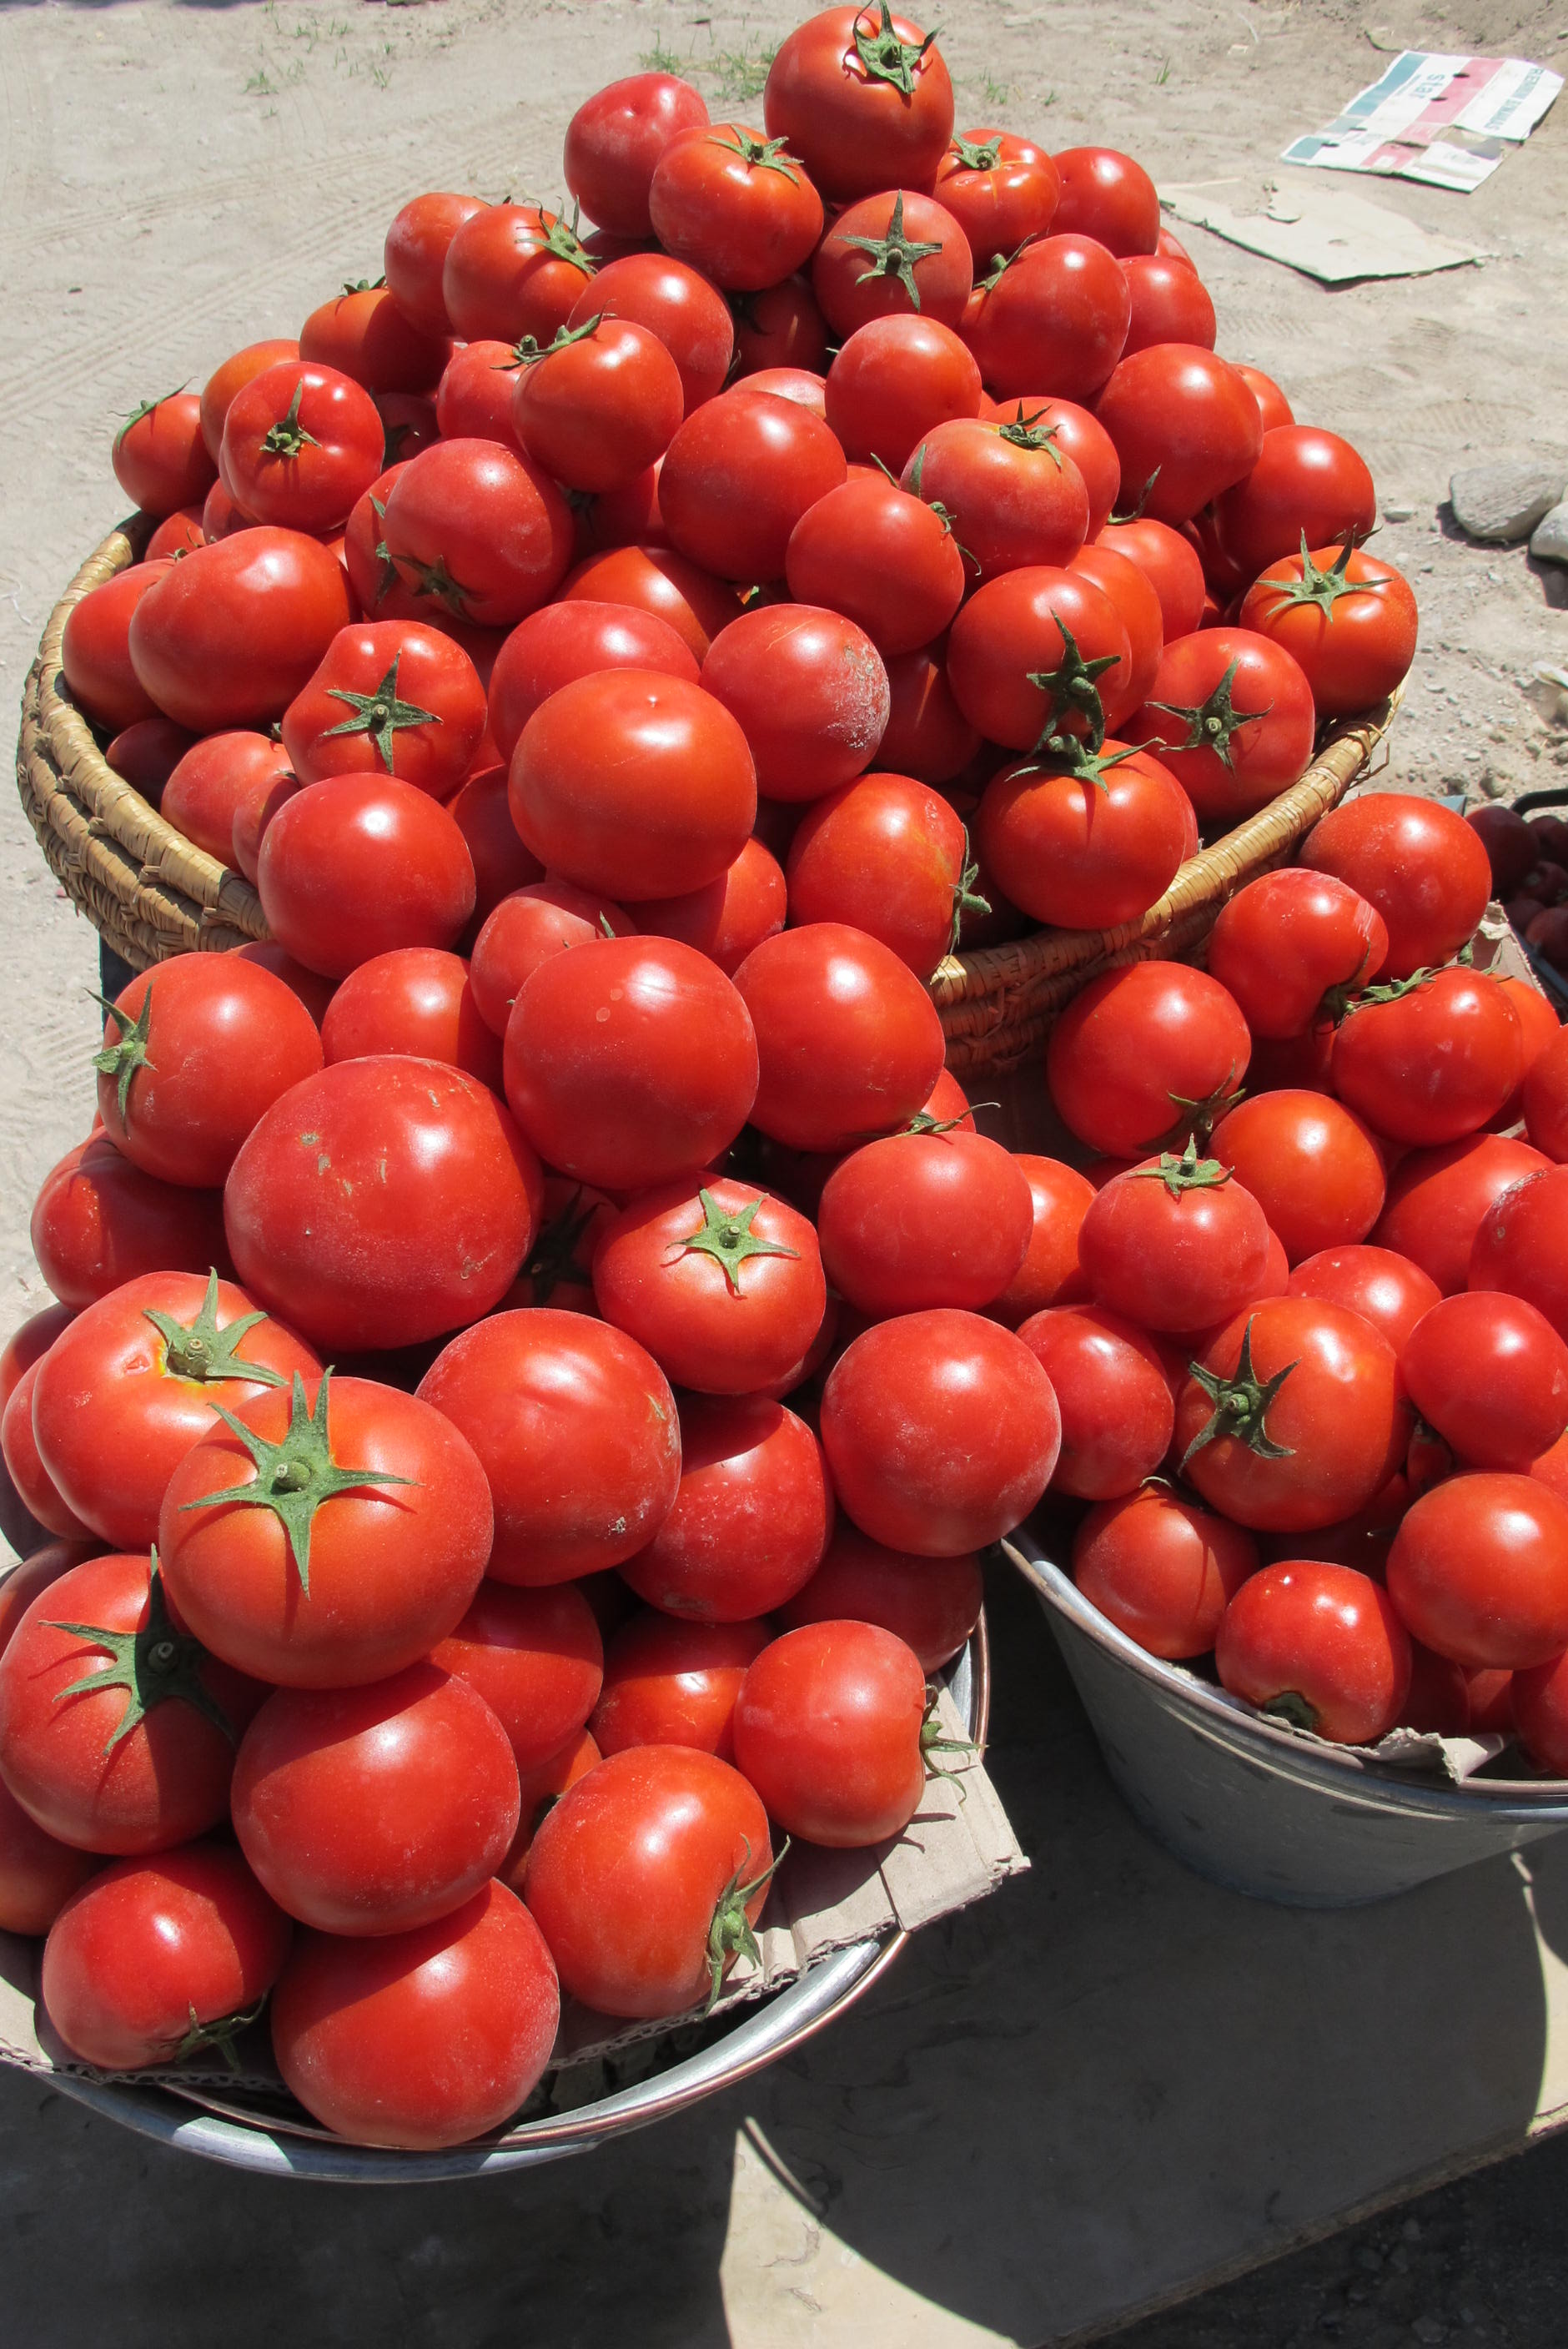 تولید ۱۶ هزار تن رب از خرید حمایتی گوجه در فارس